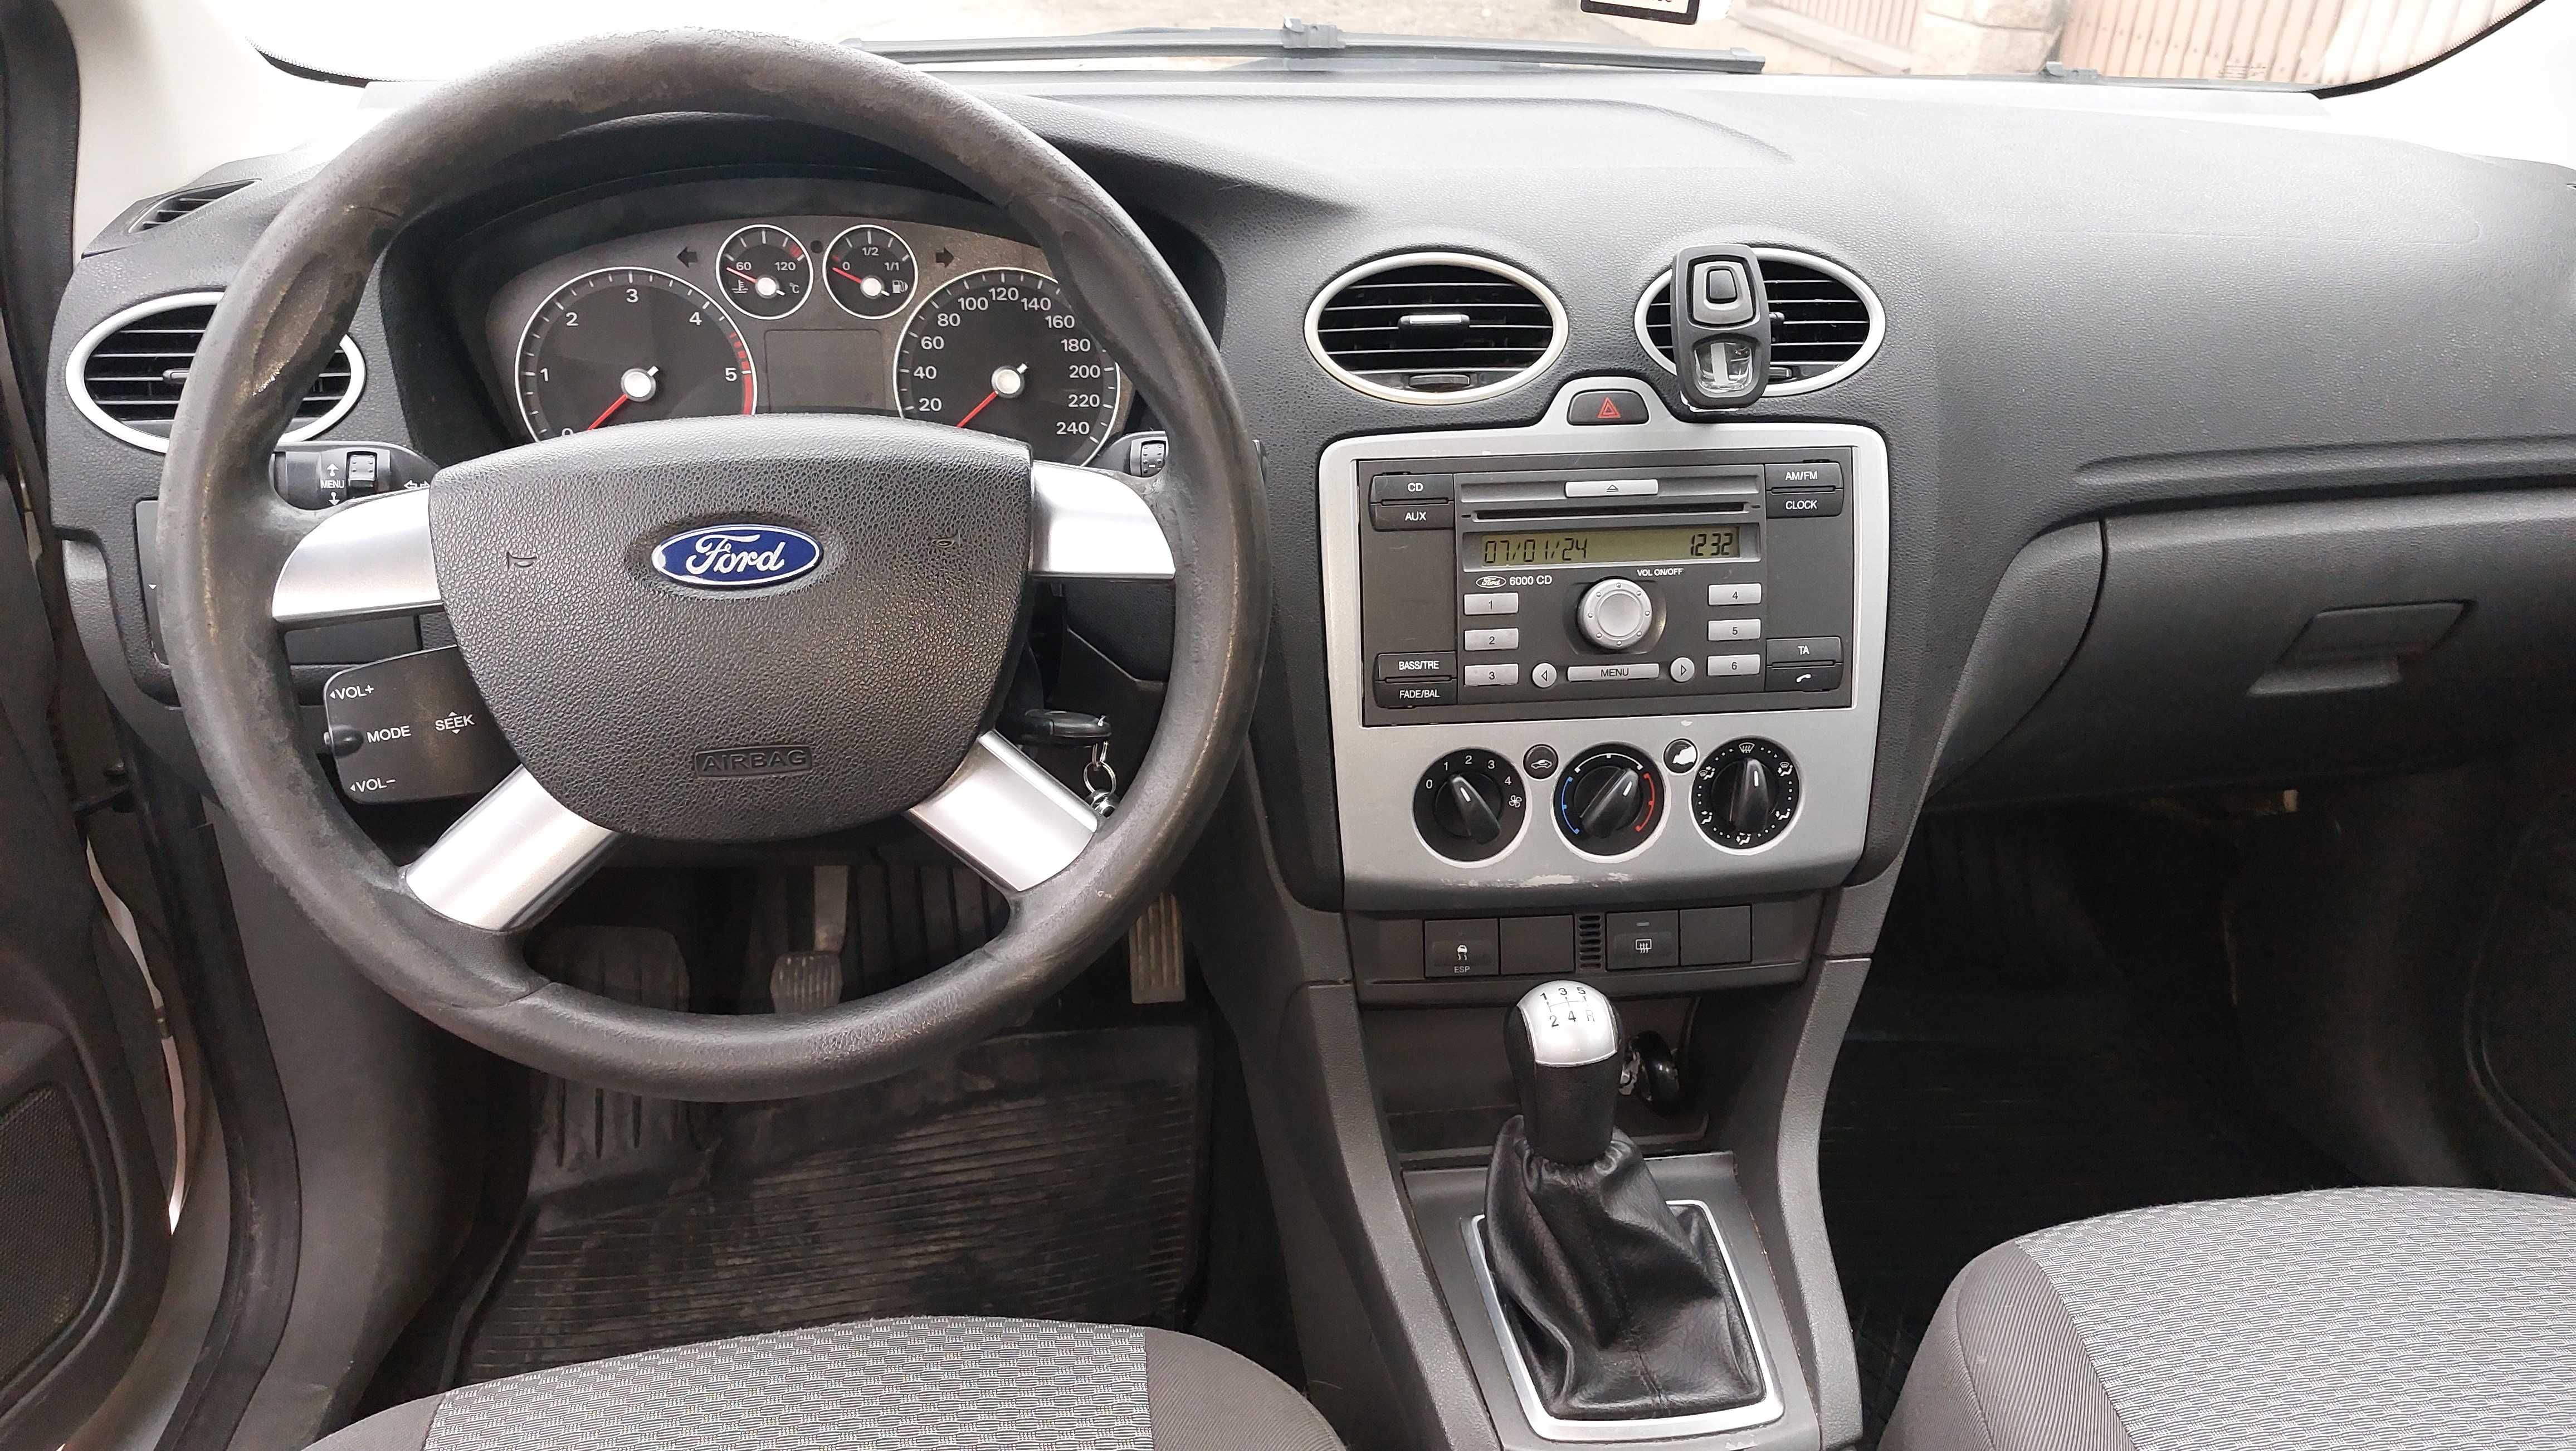 Ford Focus 2007r. 1.6 TDCi 109KM Kombi Ekonomiczny na dojazdy